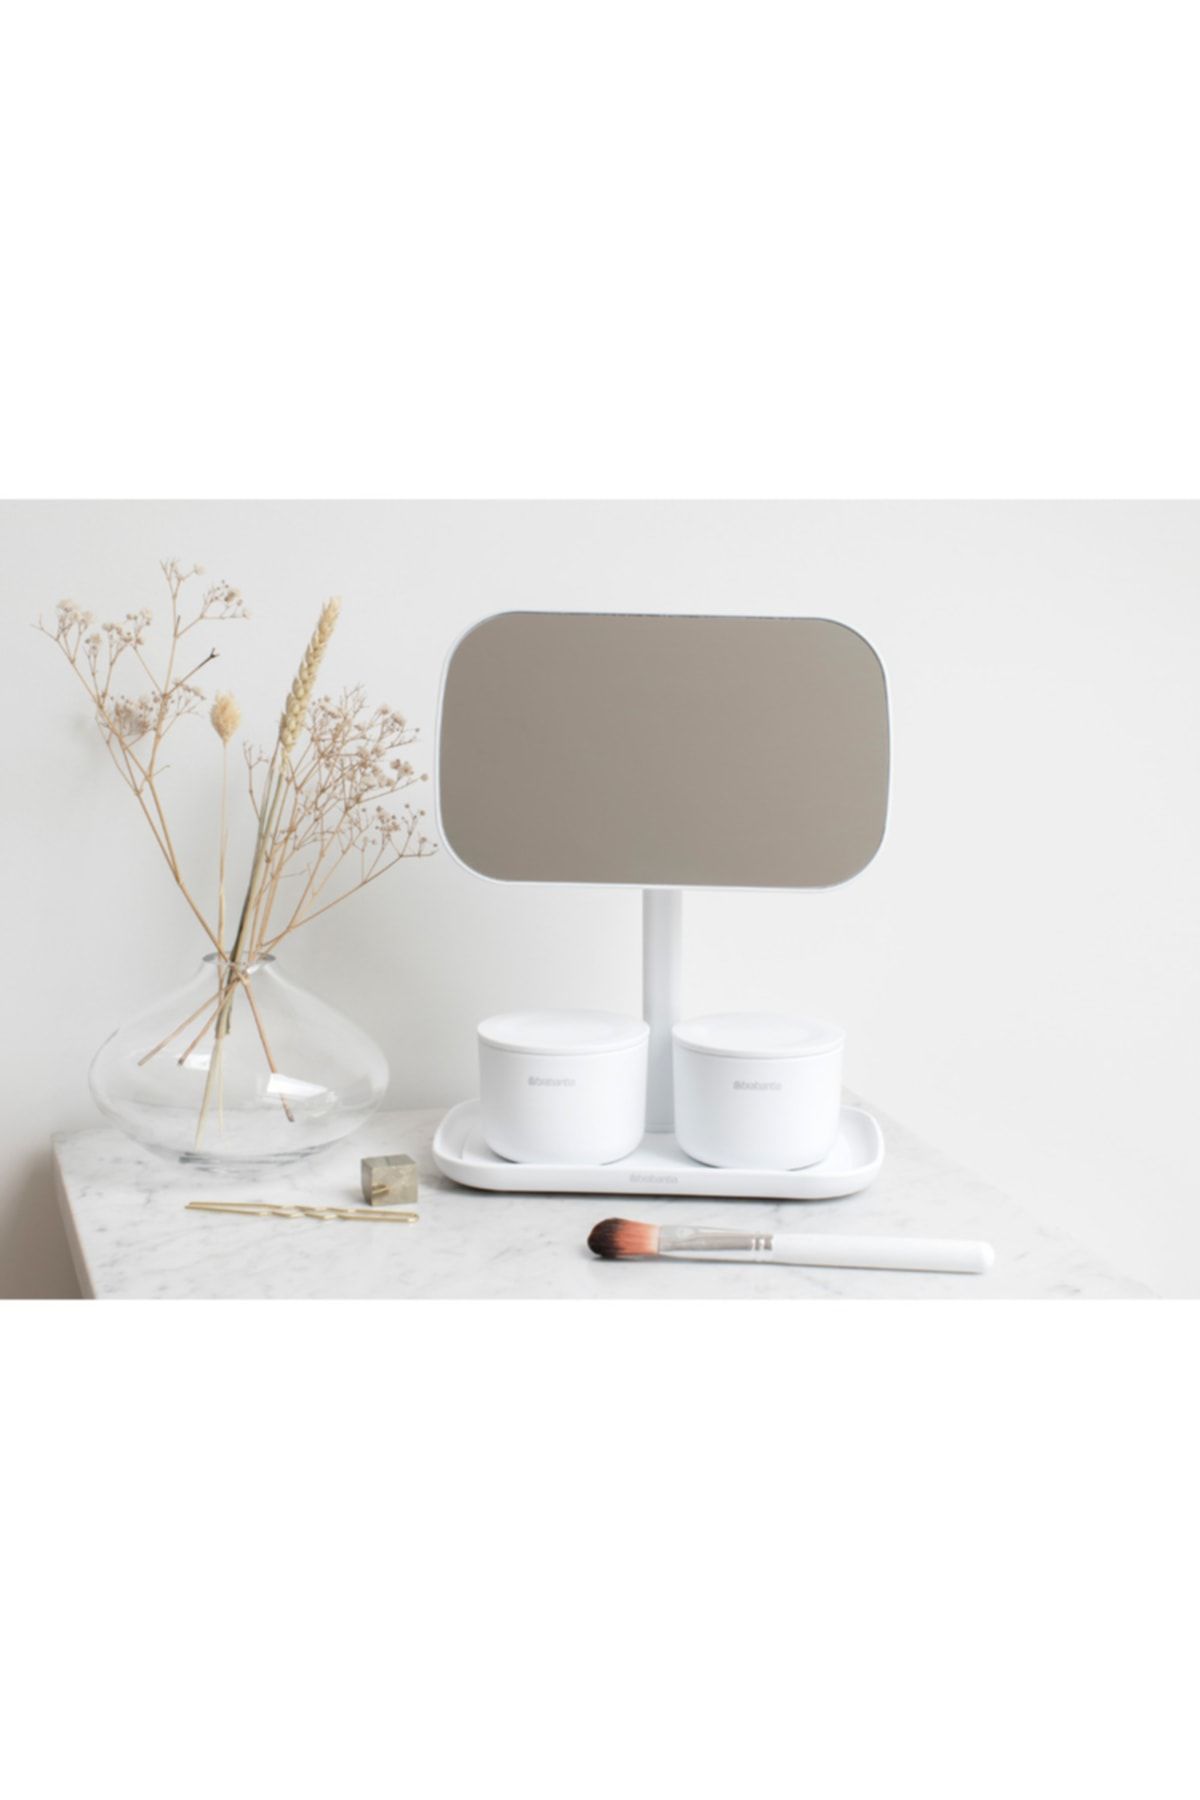 Beyaz Ayaklı Masa Aynası 12,6cmx20cmx28,3cm